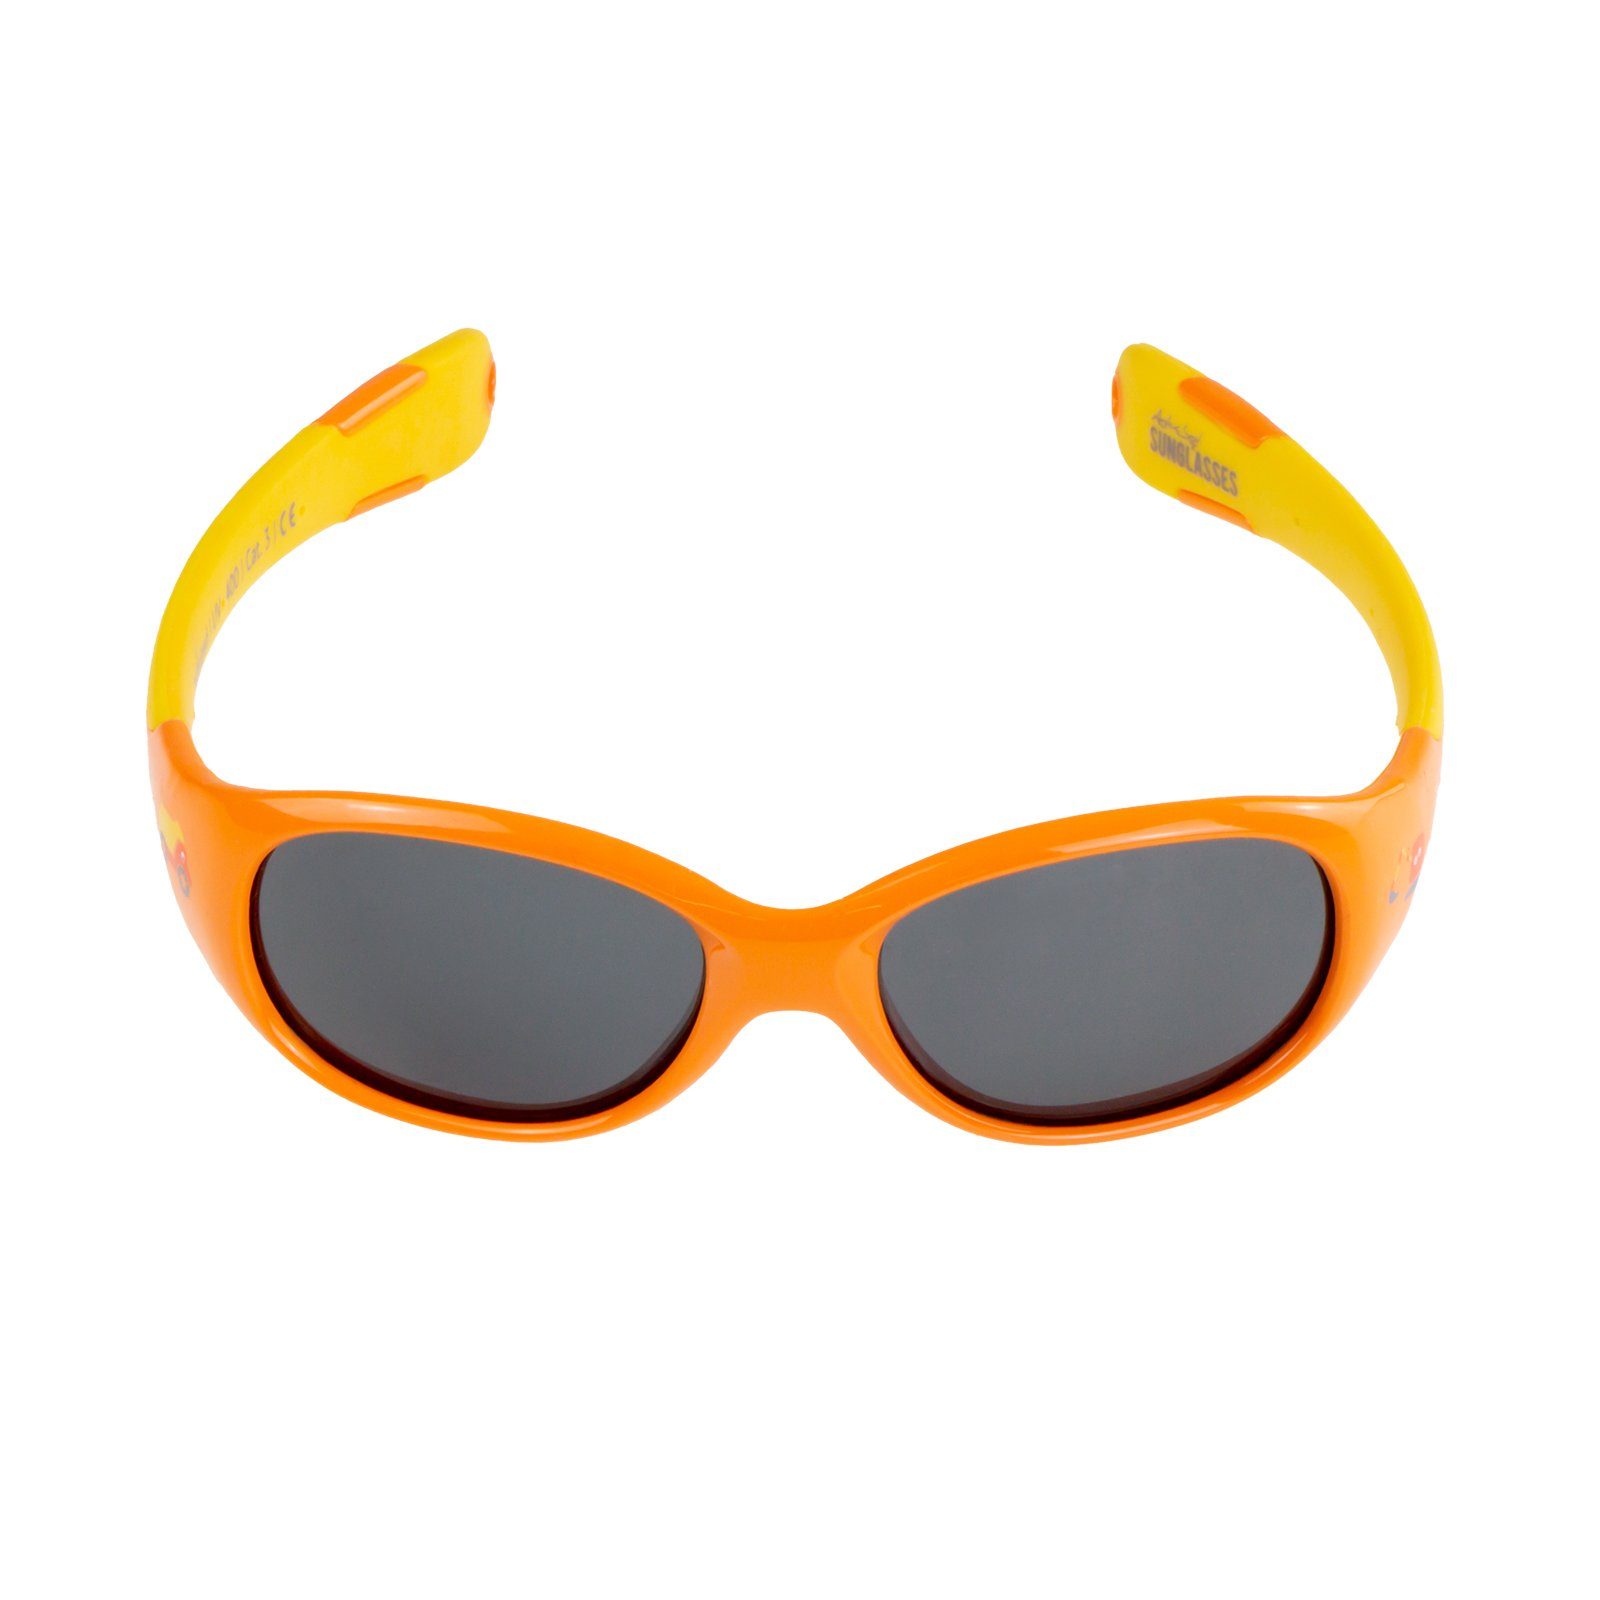 Sonnenbrille, bunten mit pfiffigen Motiven) SUNGLASSES & Flexibel & Jahre The ActiveSol & Farben 0-2 Sonnenbrille Mädchen, (in Builder Baby Unzerstörbar Jungen